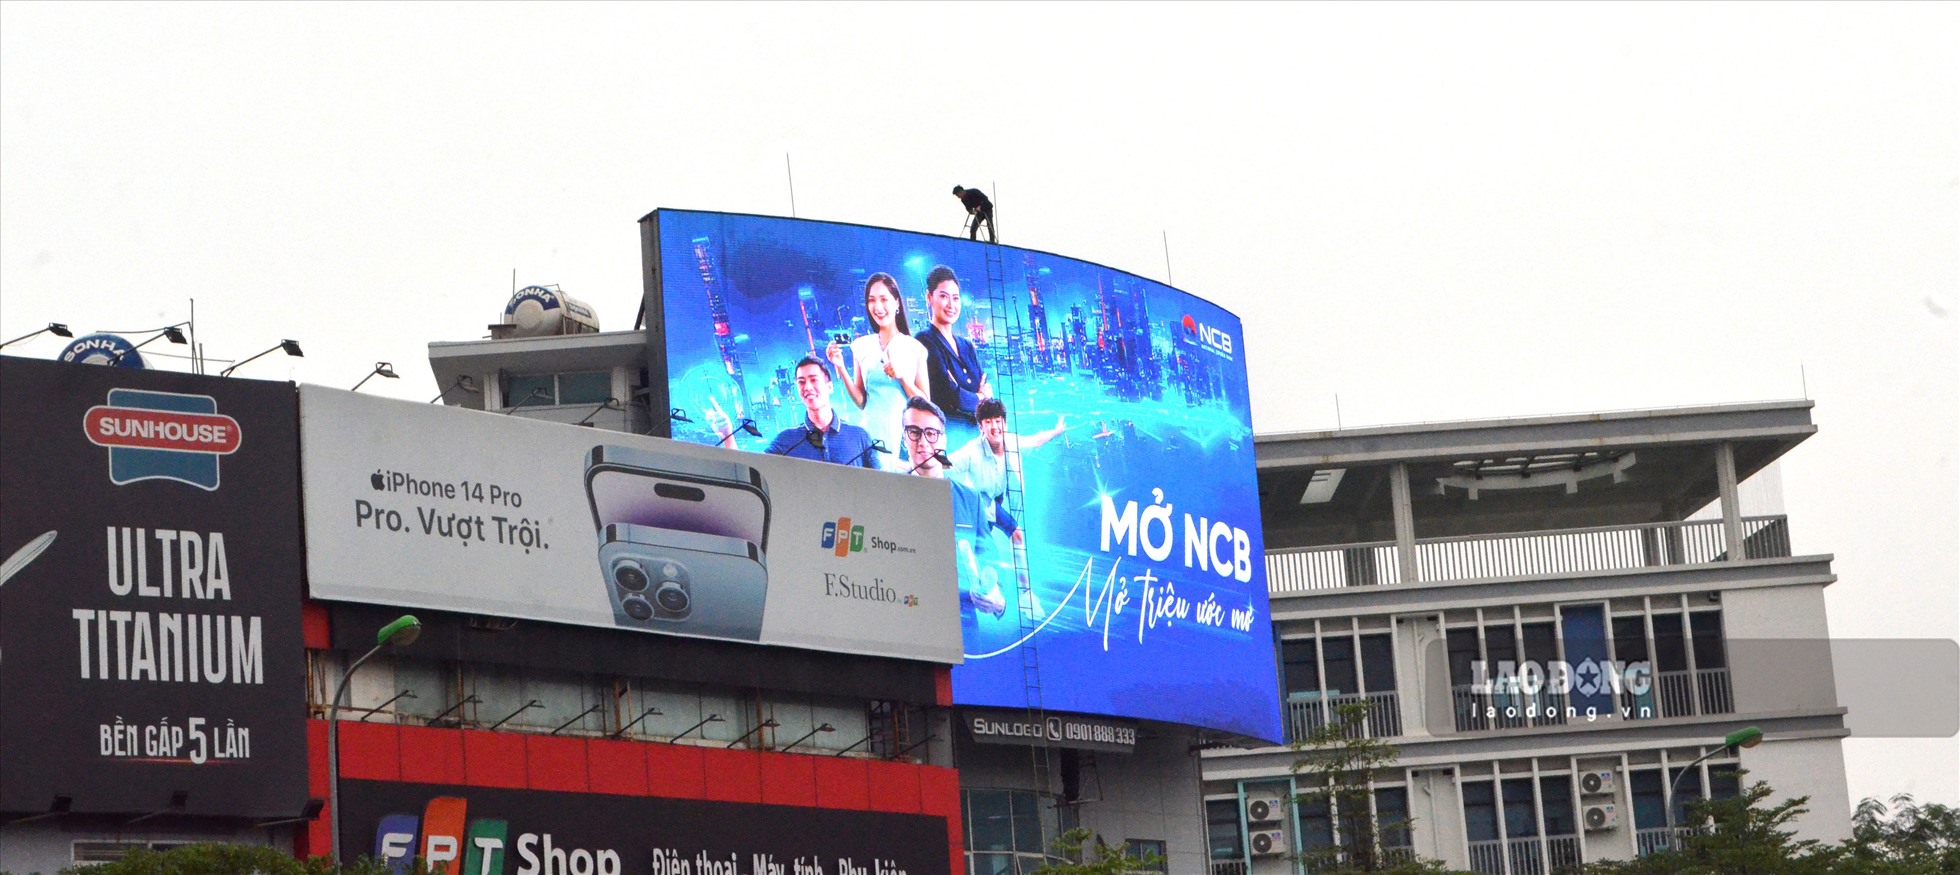 Một biển quảng cáo màn hình LED cỡ lớn đặt trên phố Đông Các (quận Đống Đa).